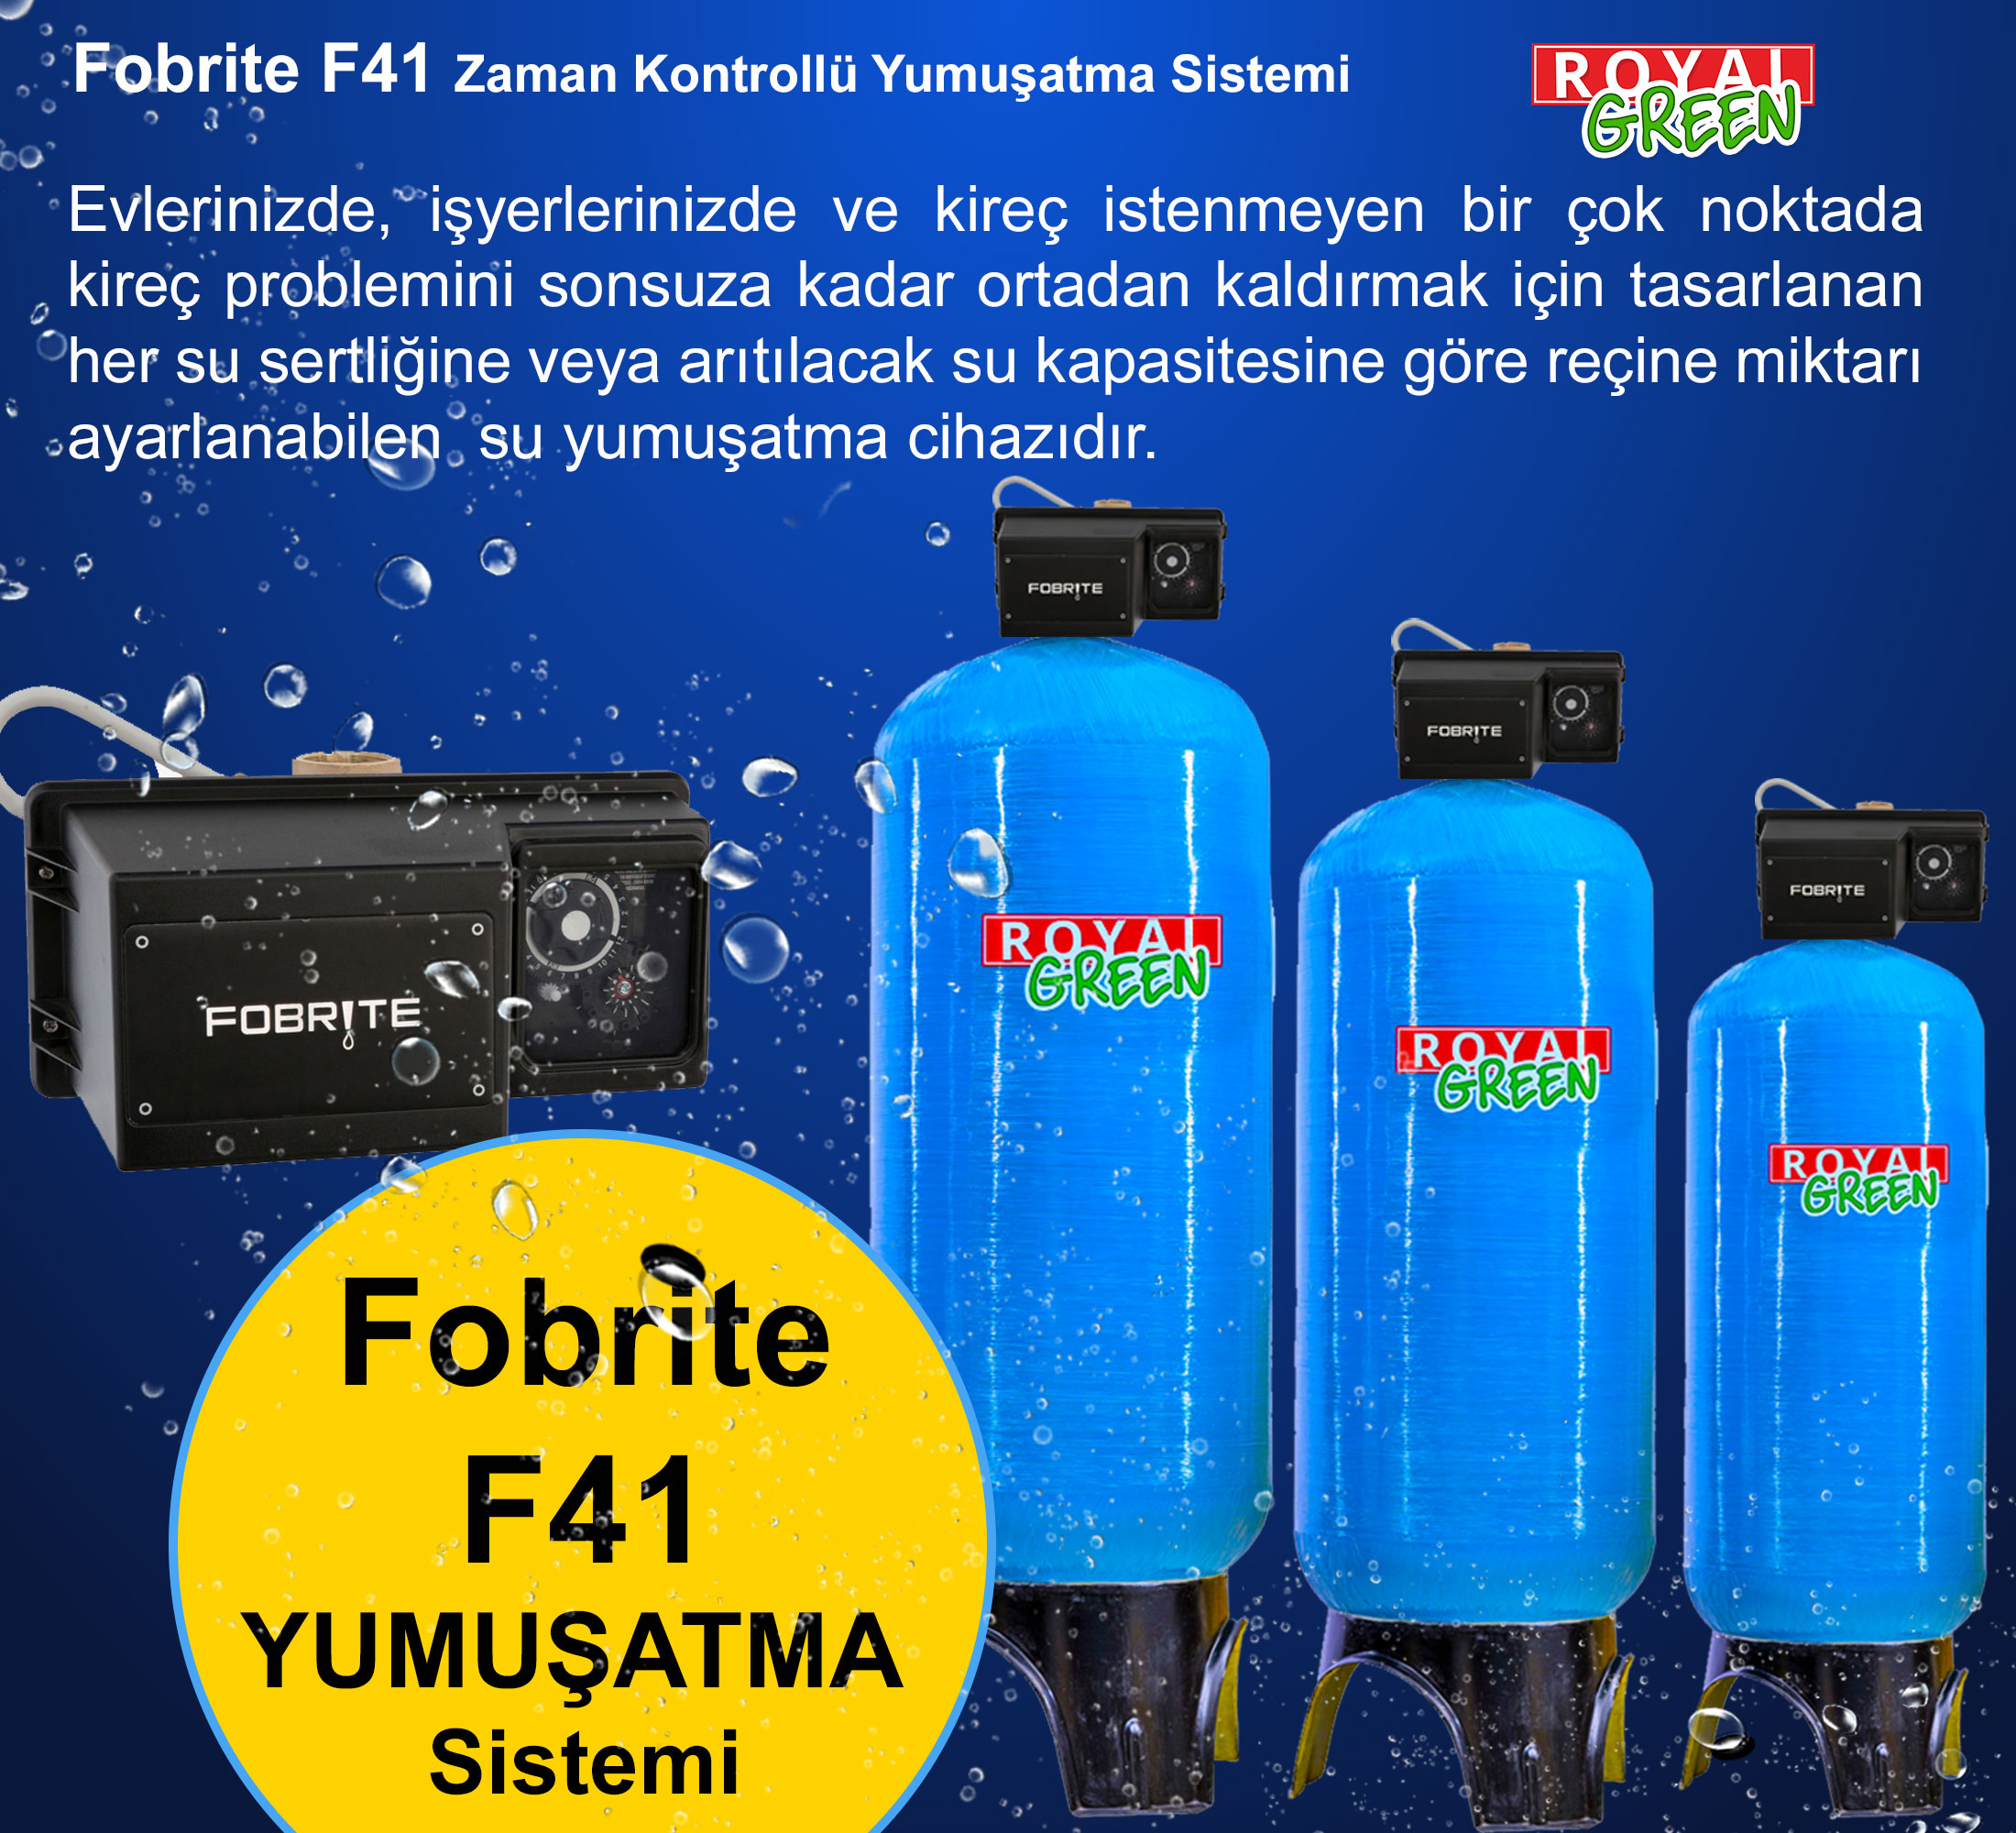 fobrite F41 yumusatma sistemi banner